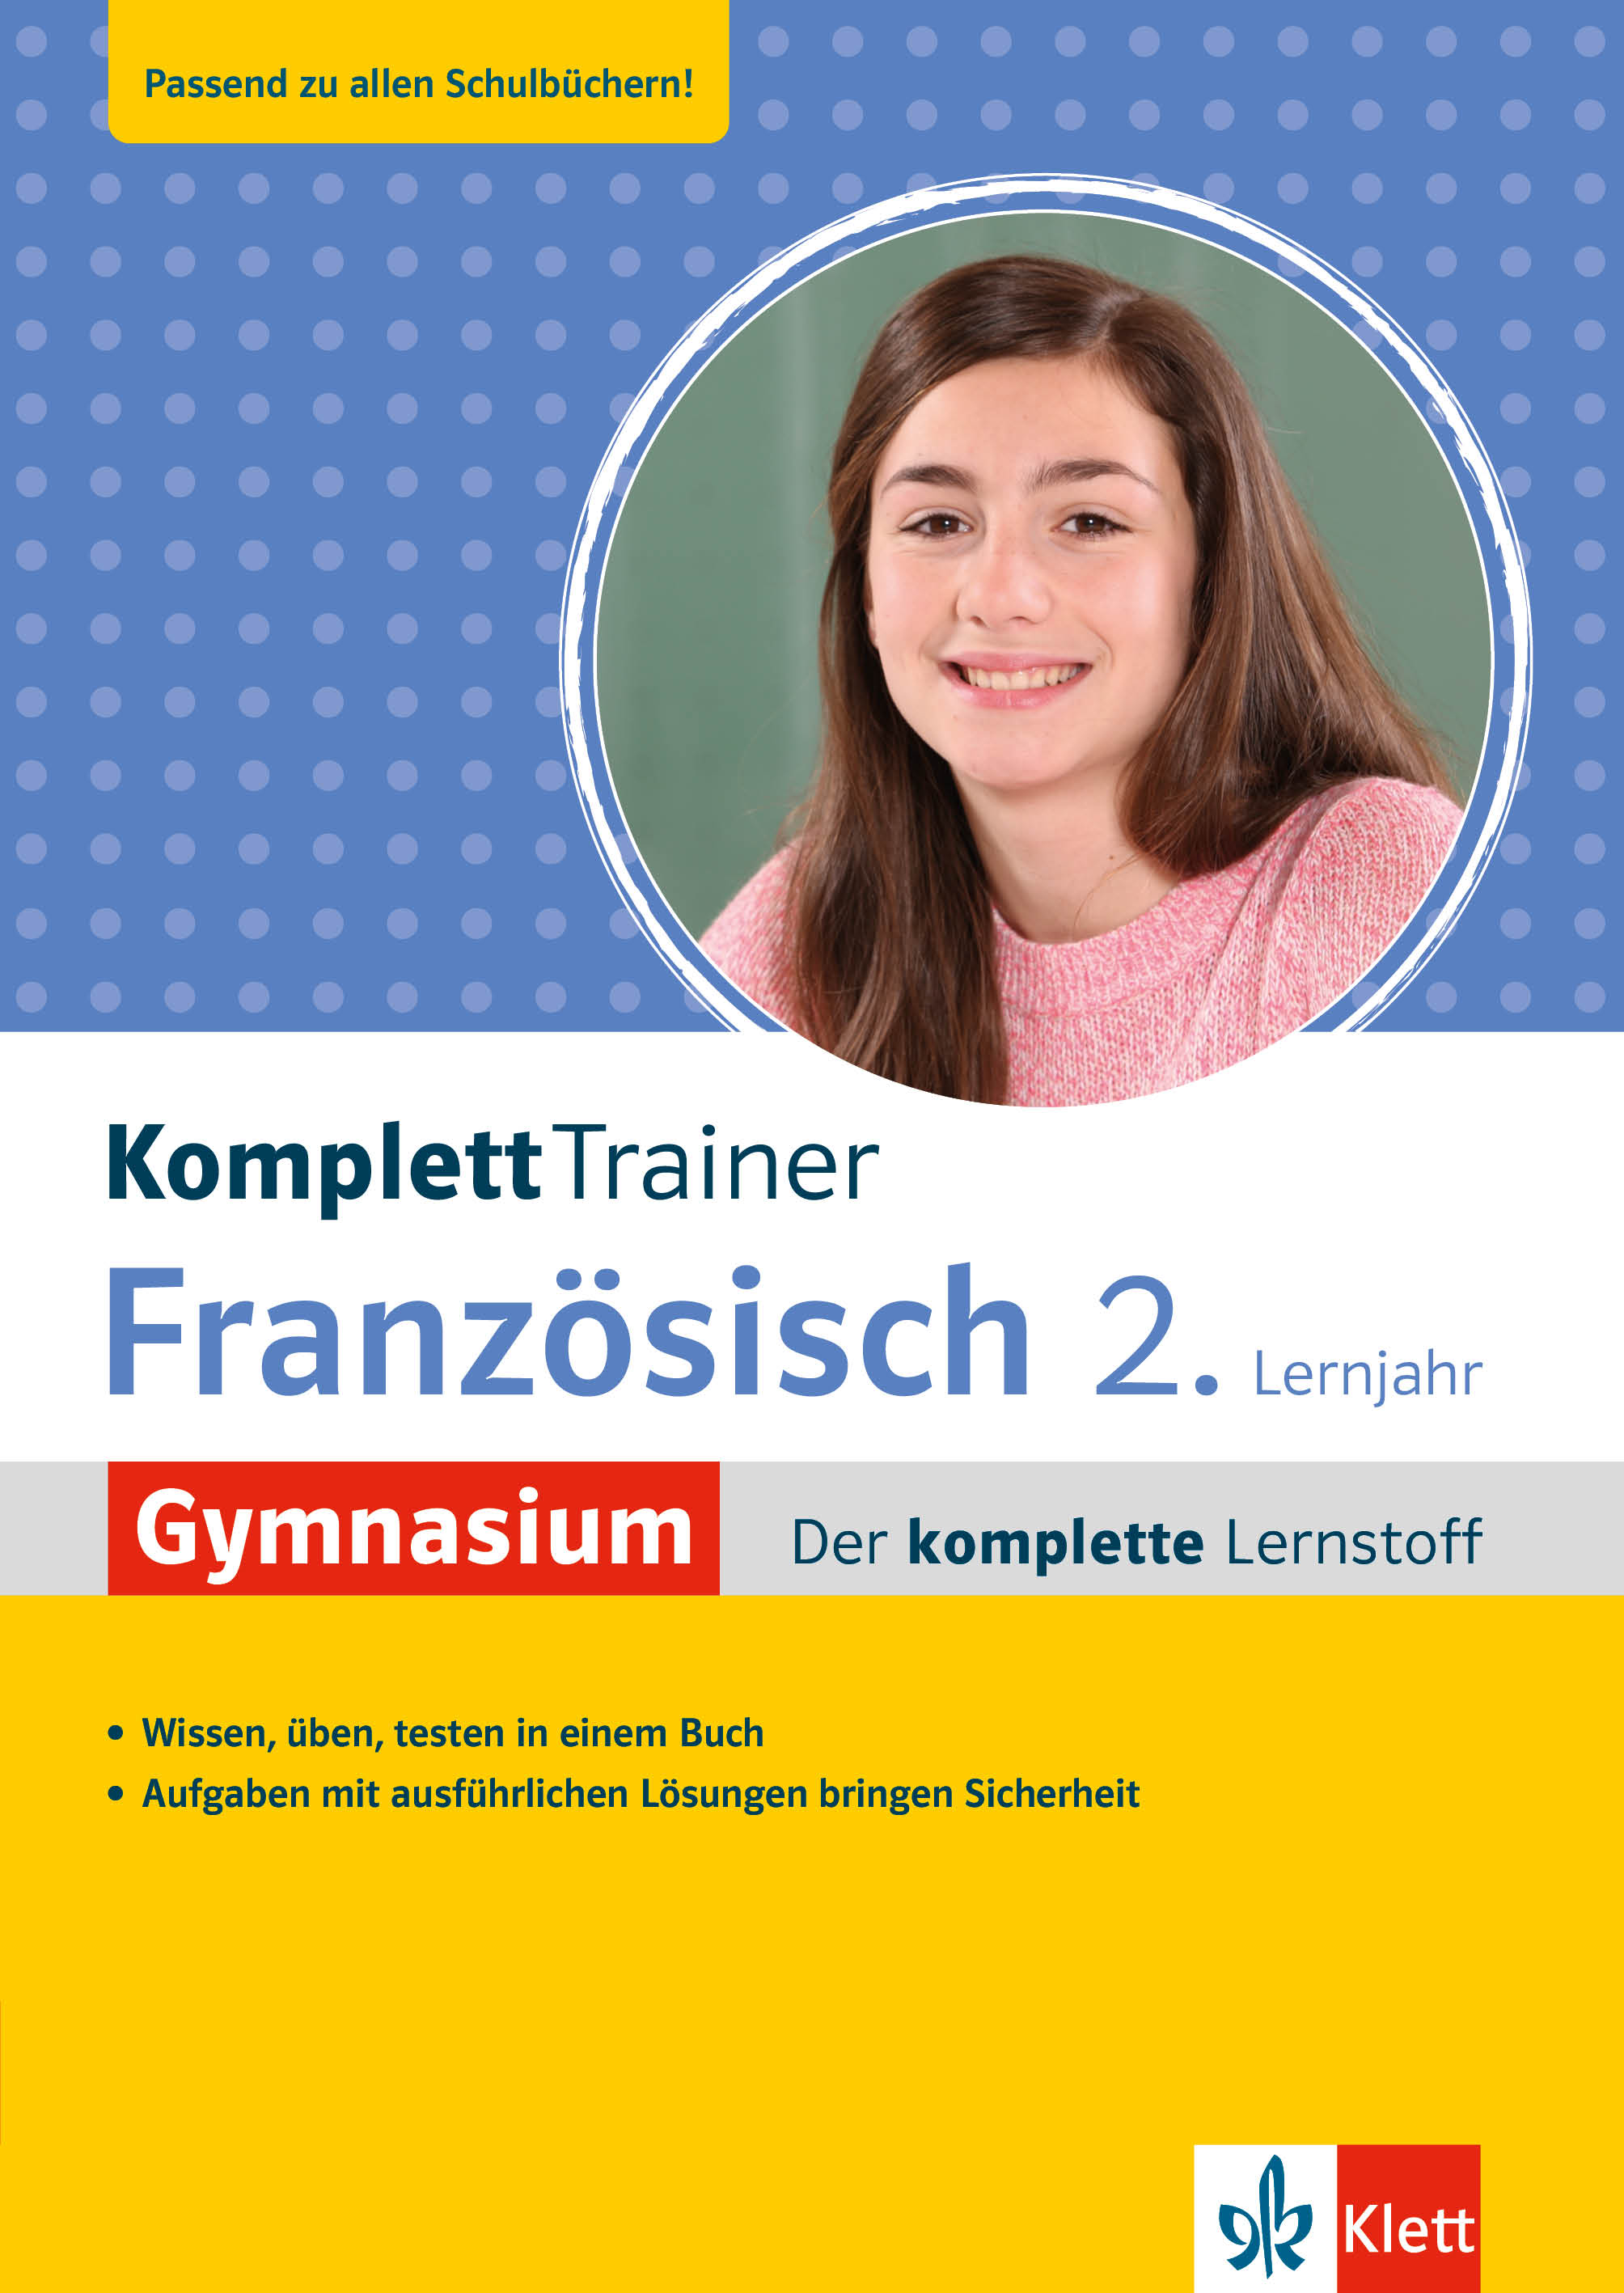 Klett KomplettTrainer Gymnasium Französisch 2. Lernjahr